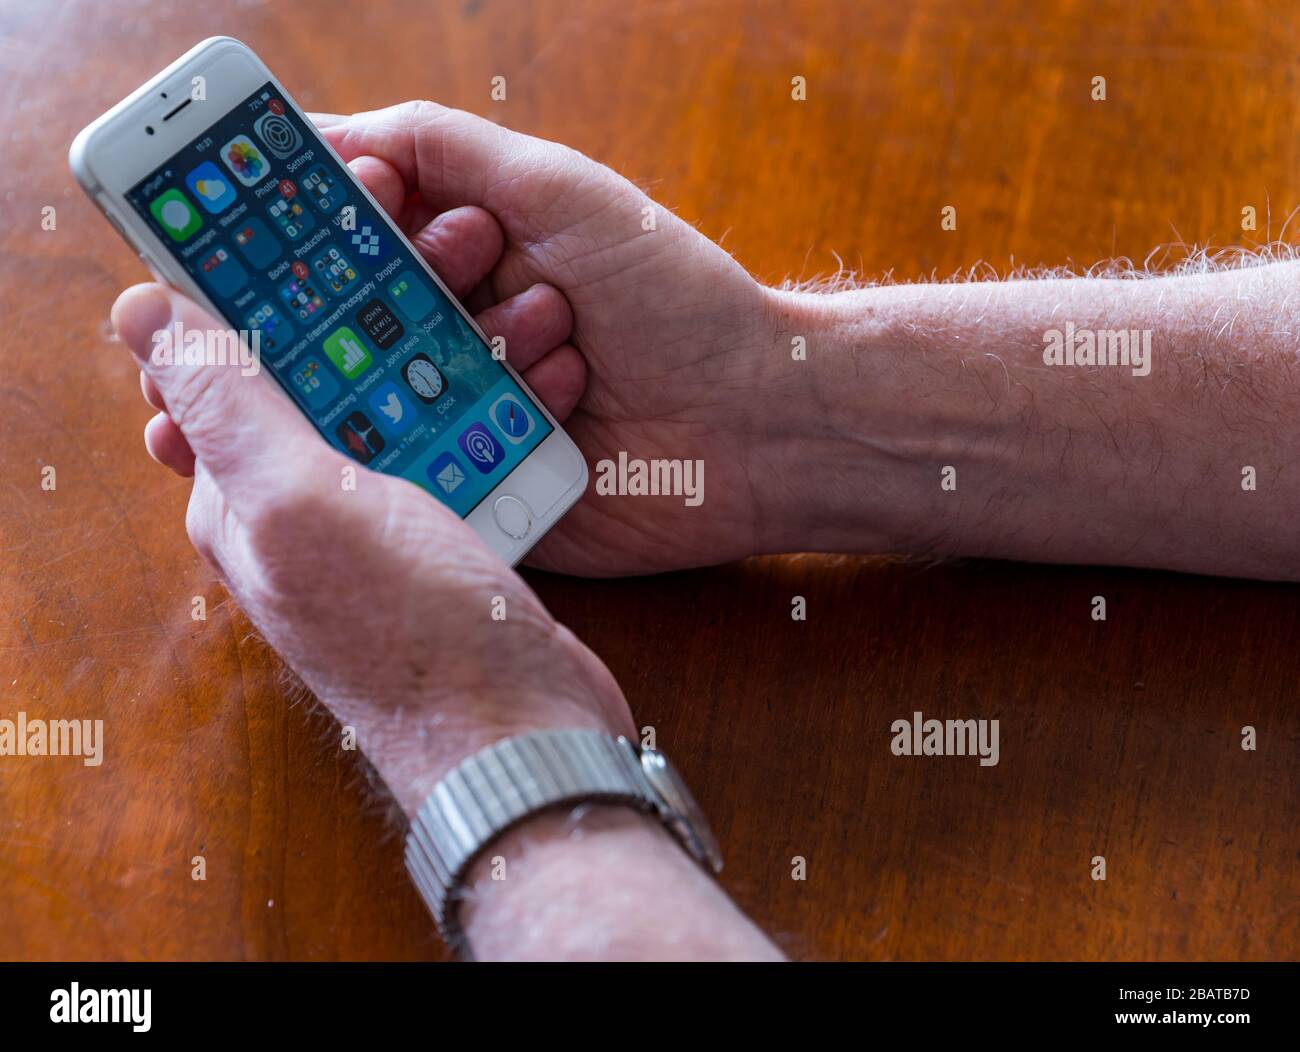 Homme senior tenant un téléphone mobile avec des applications sur l'écran principal, Royaume-Uni Banque D'Images